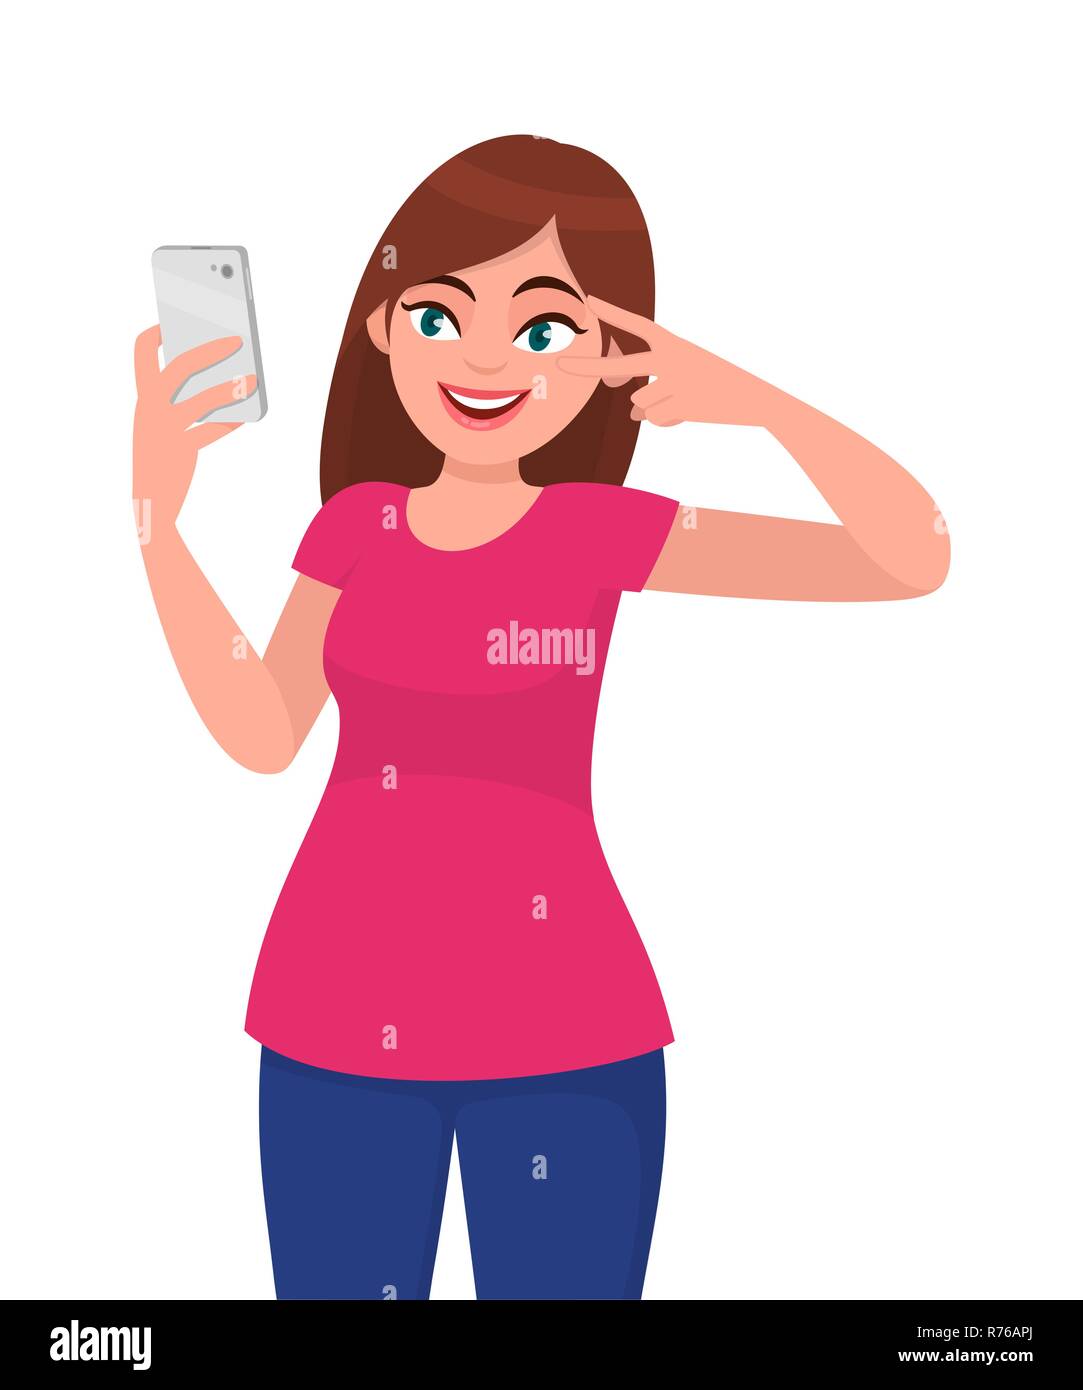 Glücklich lächelnde junge Frau unter selfie und gestikulierend Frieden oder Sieg Schild in der Nähe des Auges. Moderner Lifestyle und Kommunikation, menschliche Emotionen konzept i Stock Vektor